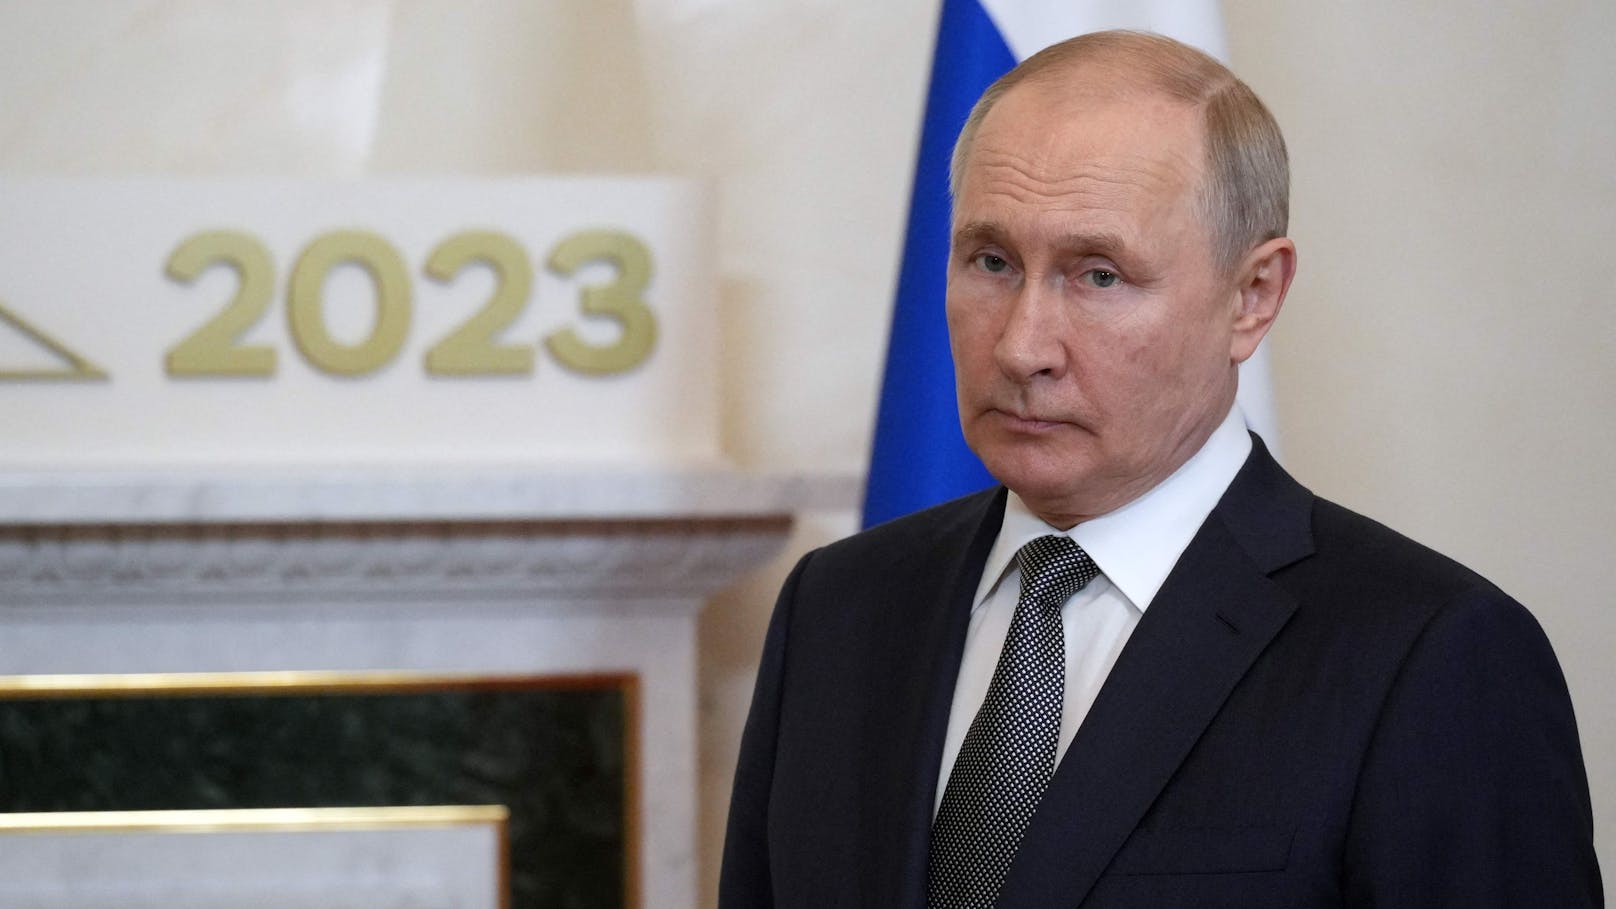 Der russische Präsident Wladimir Putin wurde beim Afrika-Gipfel vor laufender Kamera blamiert.